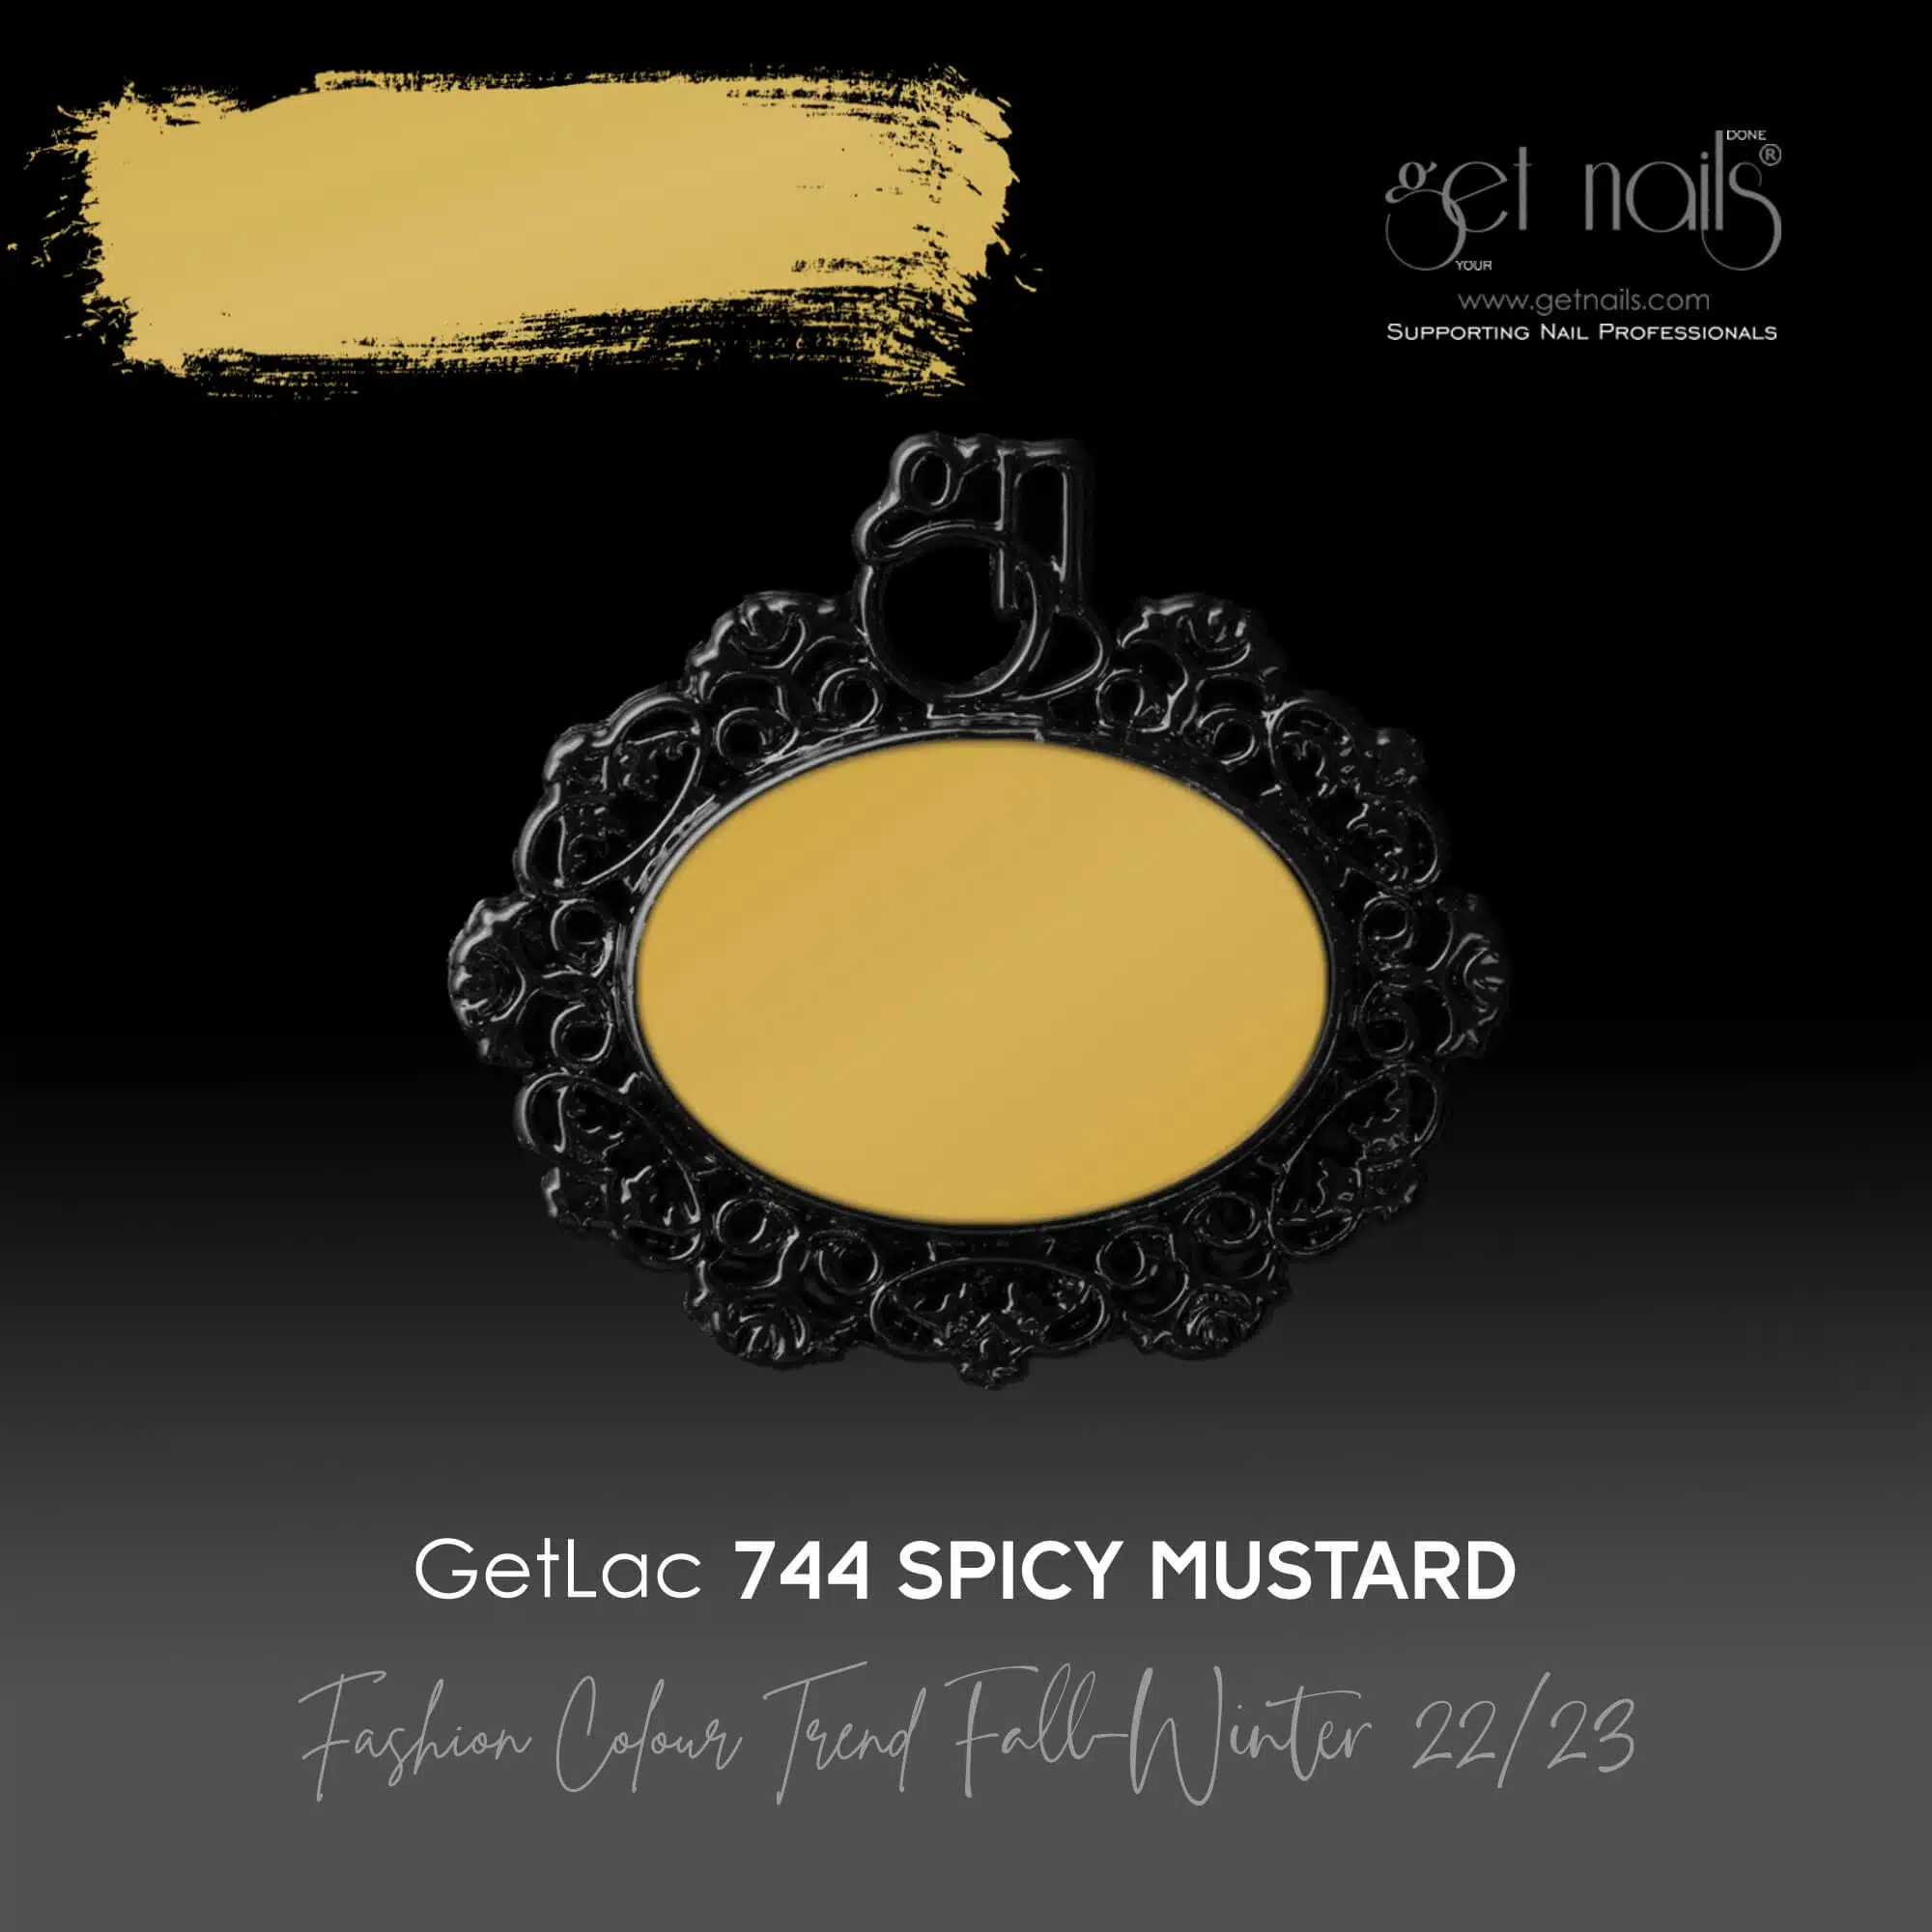 Get Nails Austria - GetLac 744 Spicy Mustard 15g